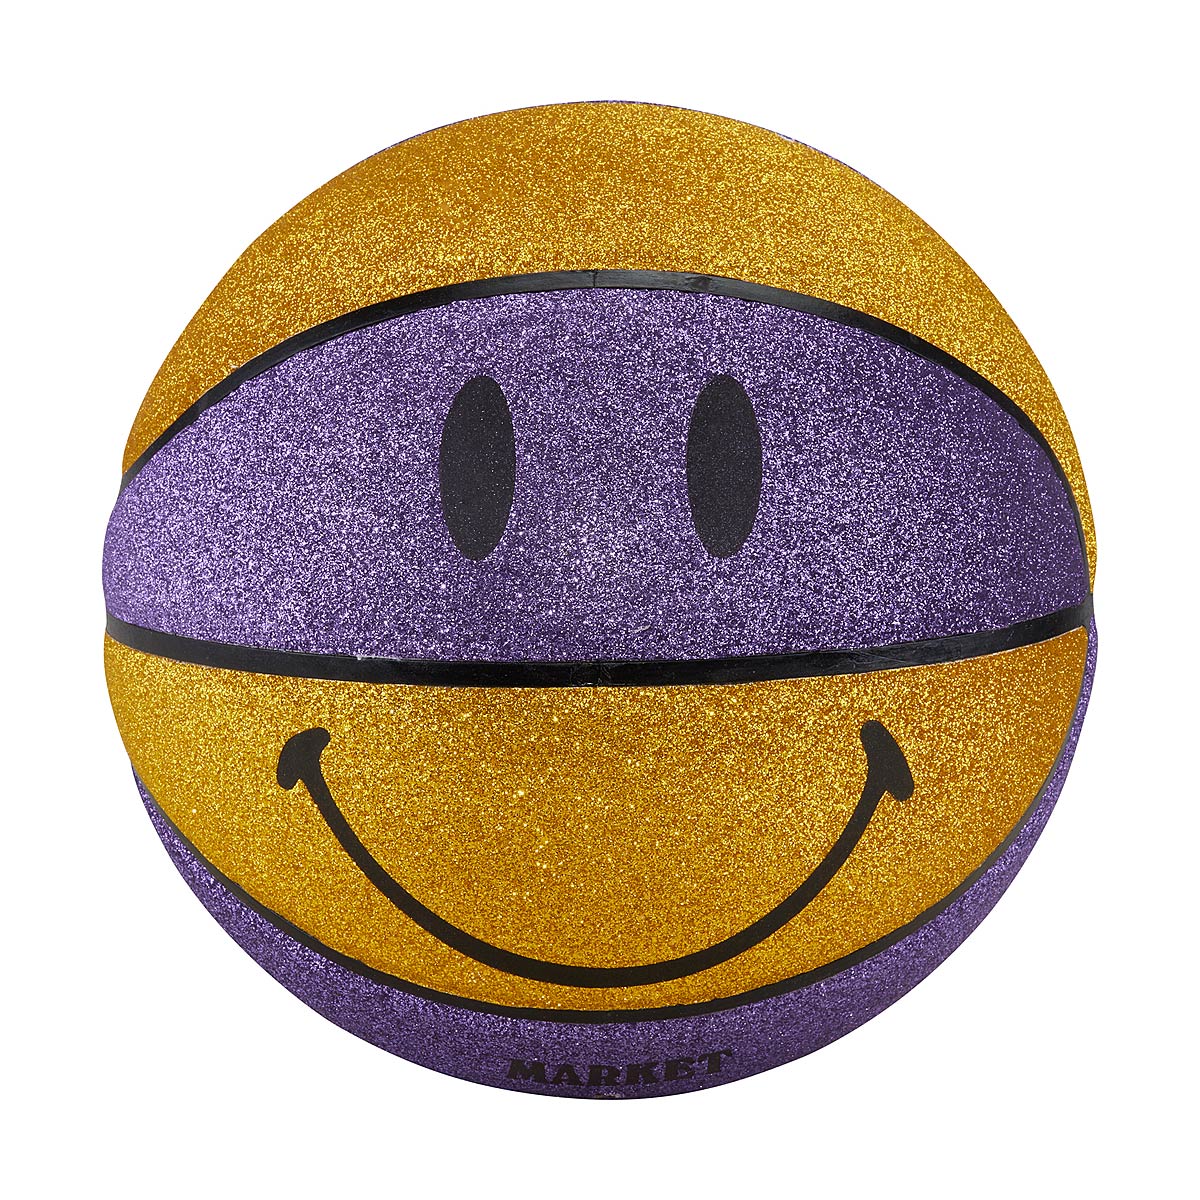 Market Smiley Glitter Showtime Basketball, Multi